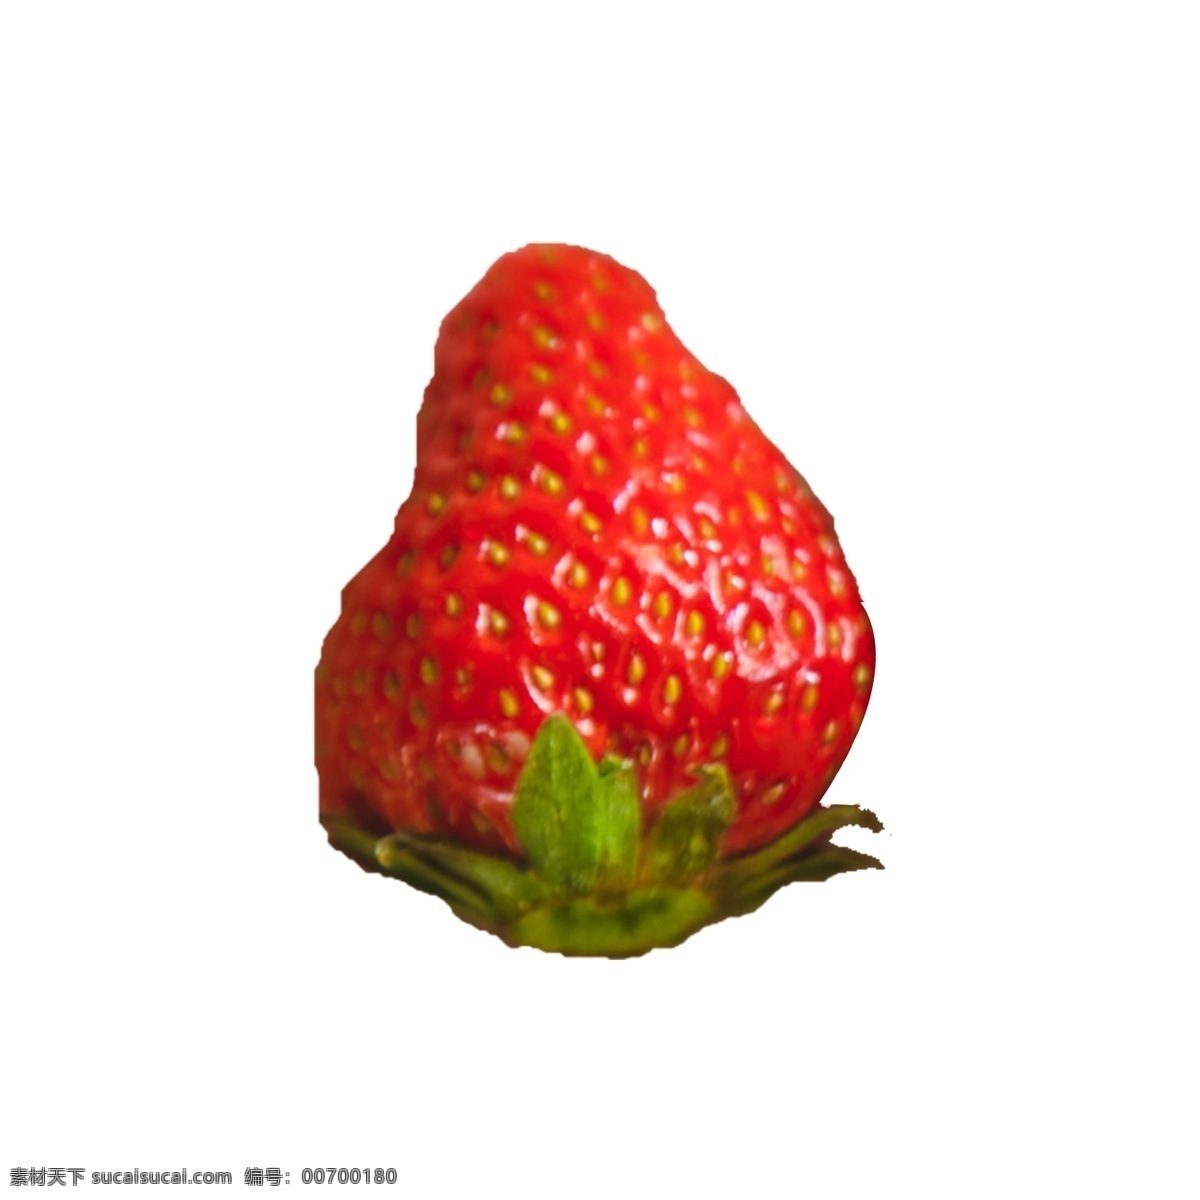 一个 新鲜 草莓 一个草莓 植物 营养 维生素 美味 甜食 奶油草莓 绿叶 叶子 水果 红色